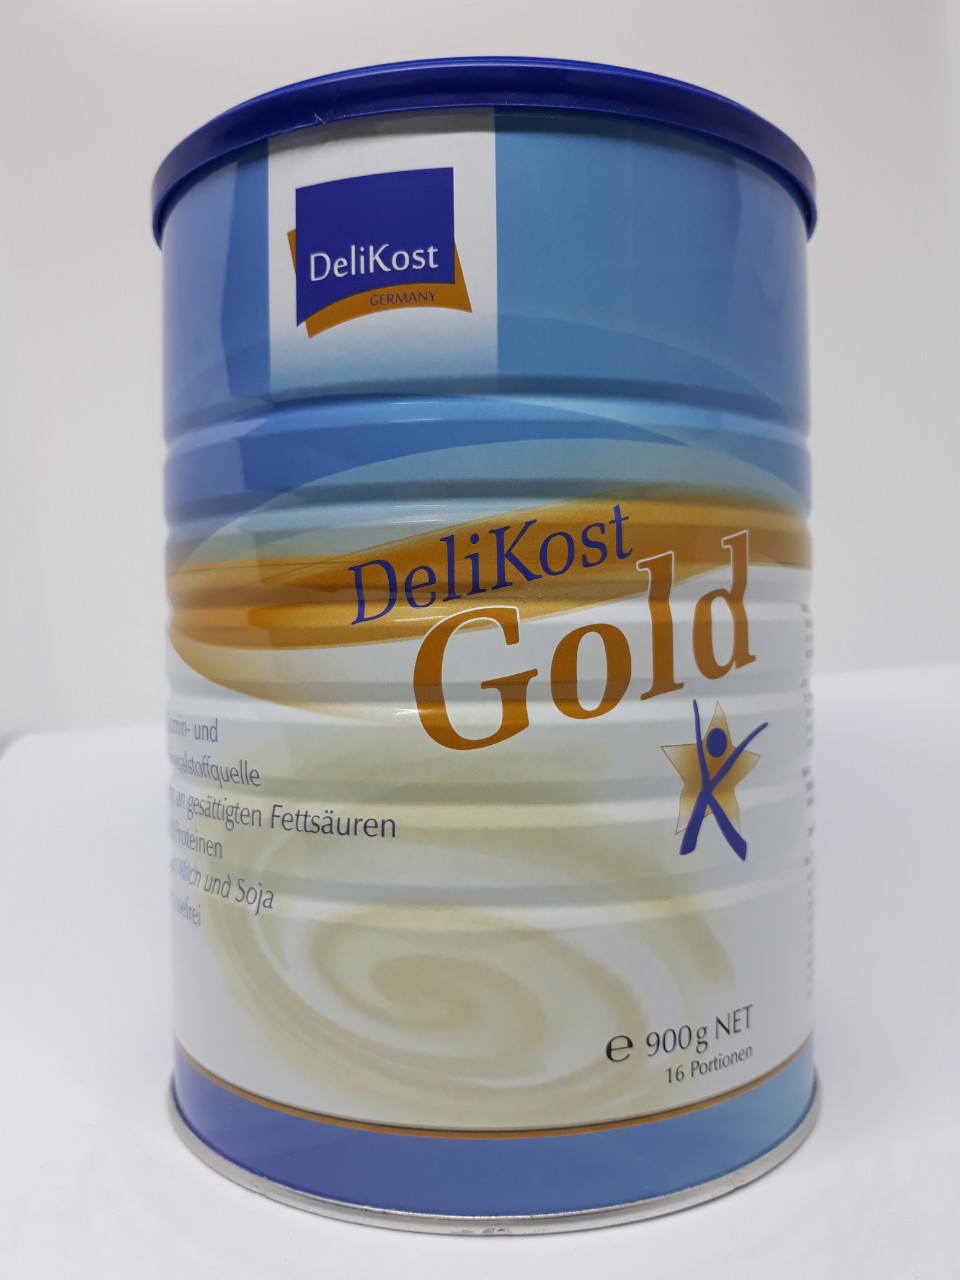 Sữa Delikost Gold 900g